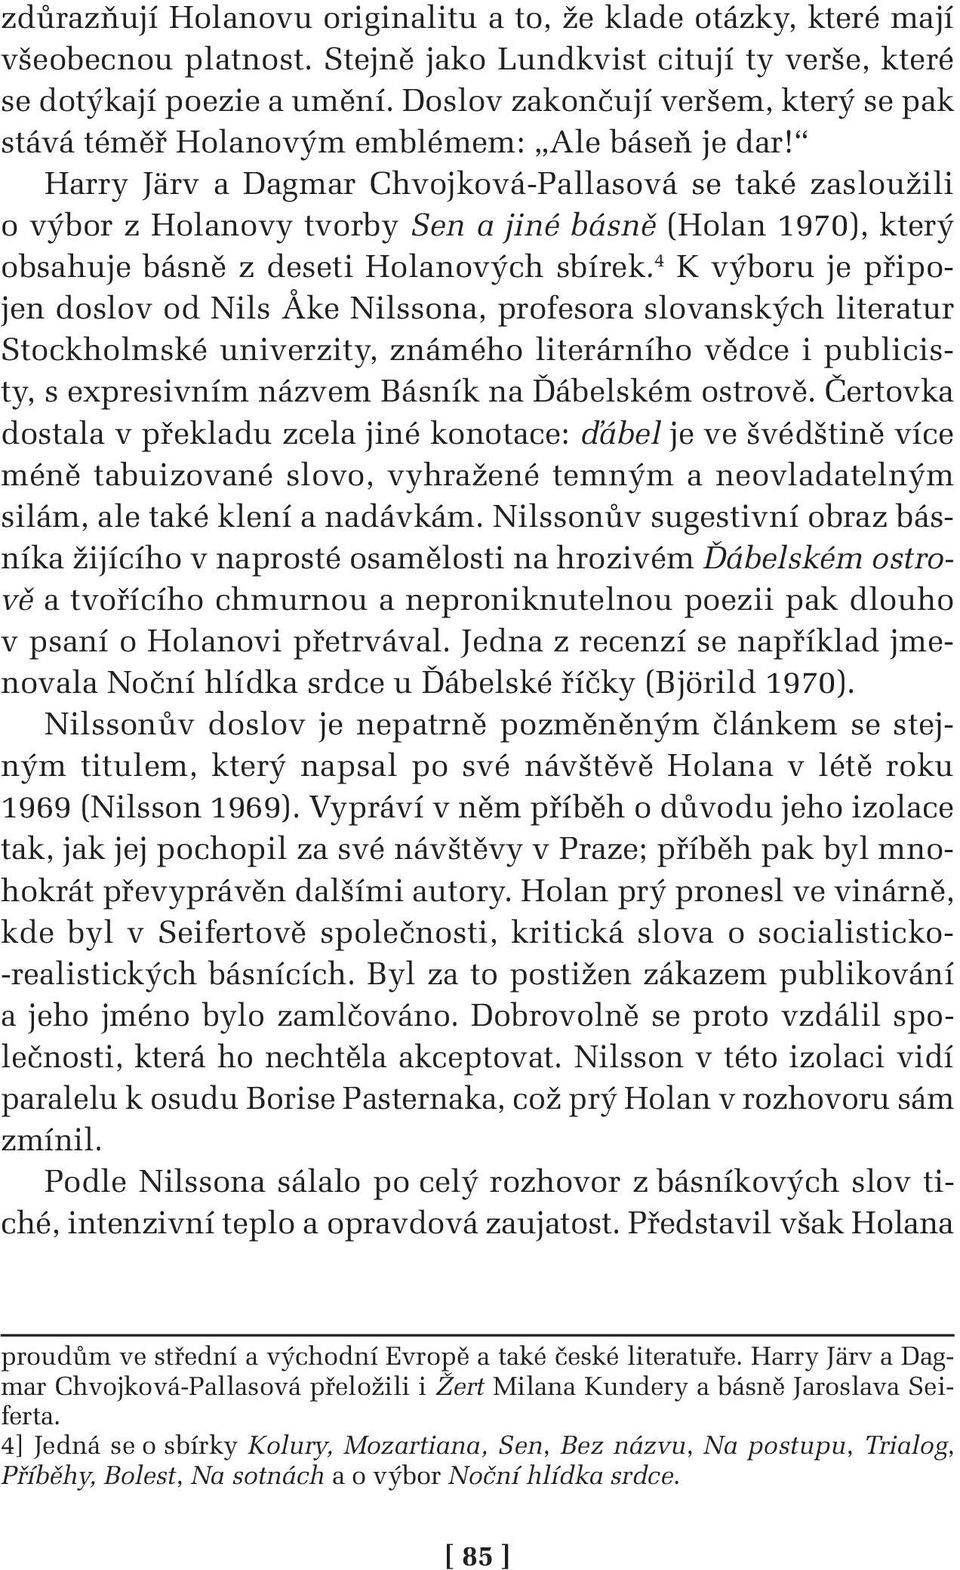 Harry Järv a Dagmar Chvojková-Pallasová se také zasloužili o výbor z Holanovy tvorby Sen a jiné básně (Holan 1970), který obsahuje básně z deseti Holanových sbírek.